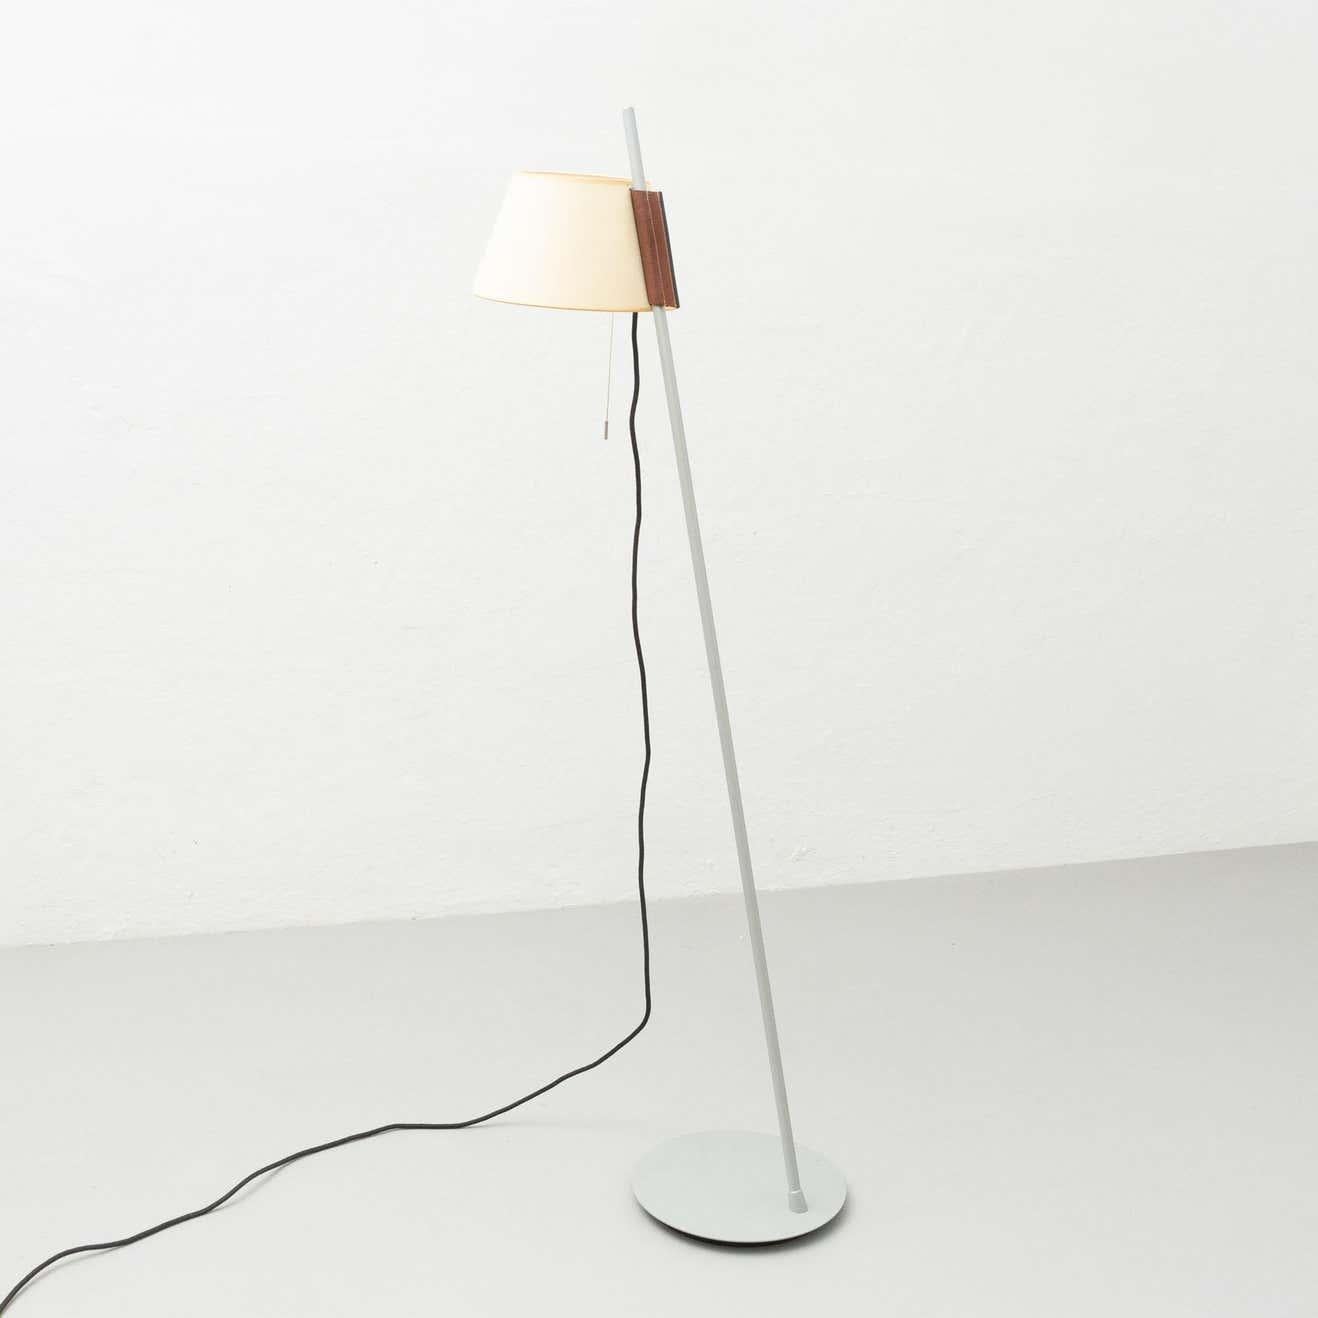 Estudio Blanch Simplisima Floor Lamp by Metalarte, circa 1970 For Sale 1